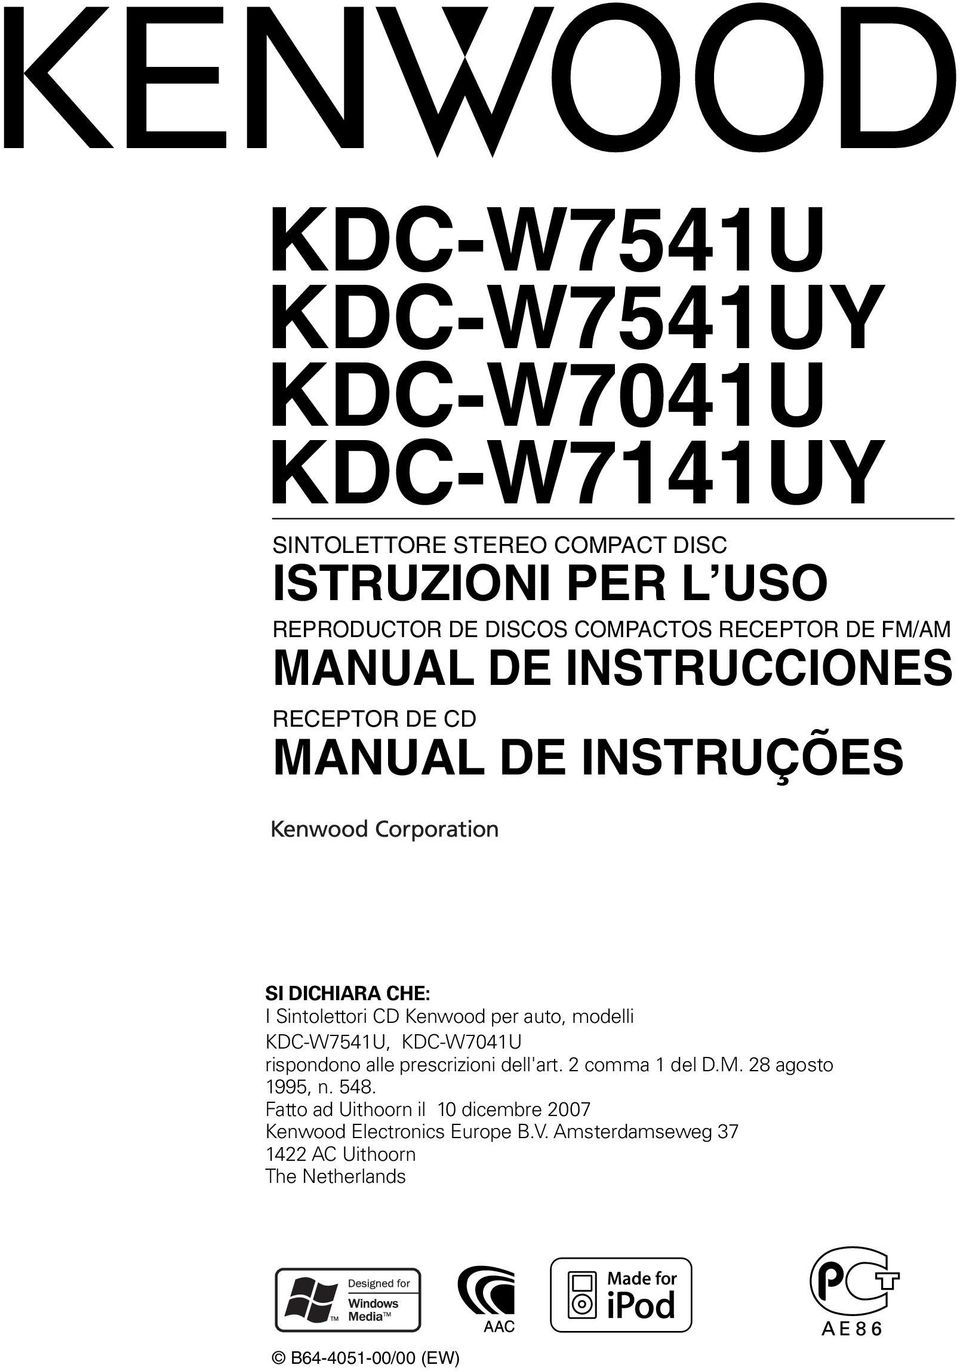 Kenwood per auto, modelli KDC-W7541U, KDC-W7041U rispondono alle prescrizioni dell'art. 2 comma 1 del D.M. 28 agosto 1995, n.